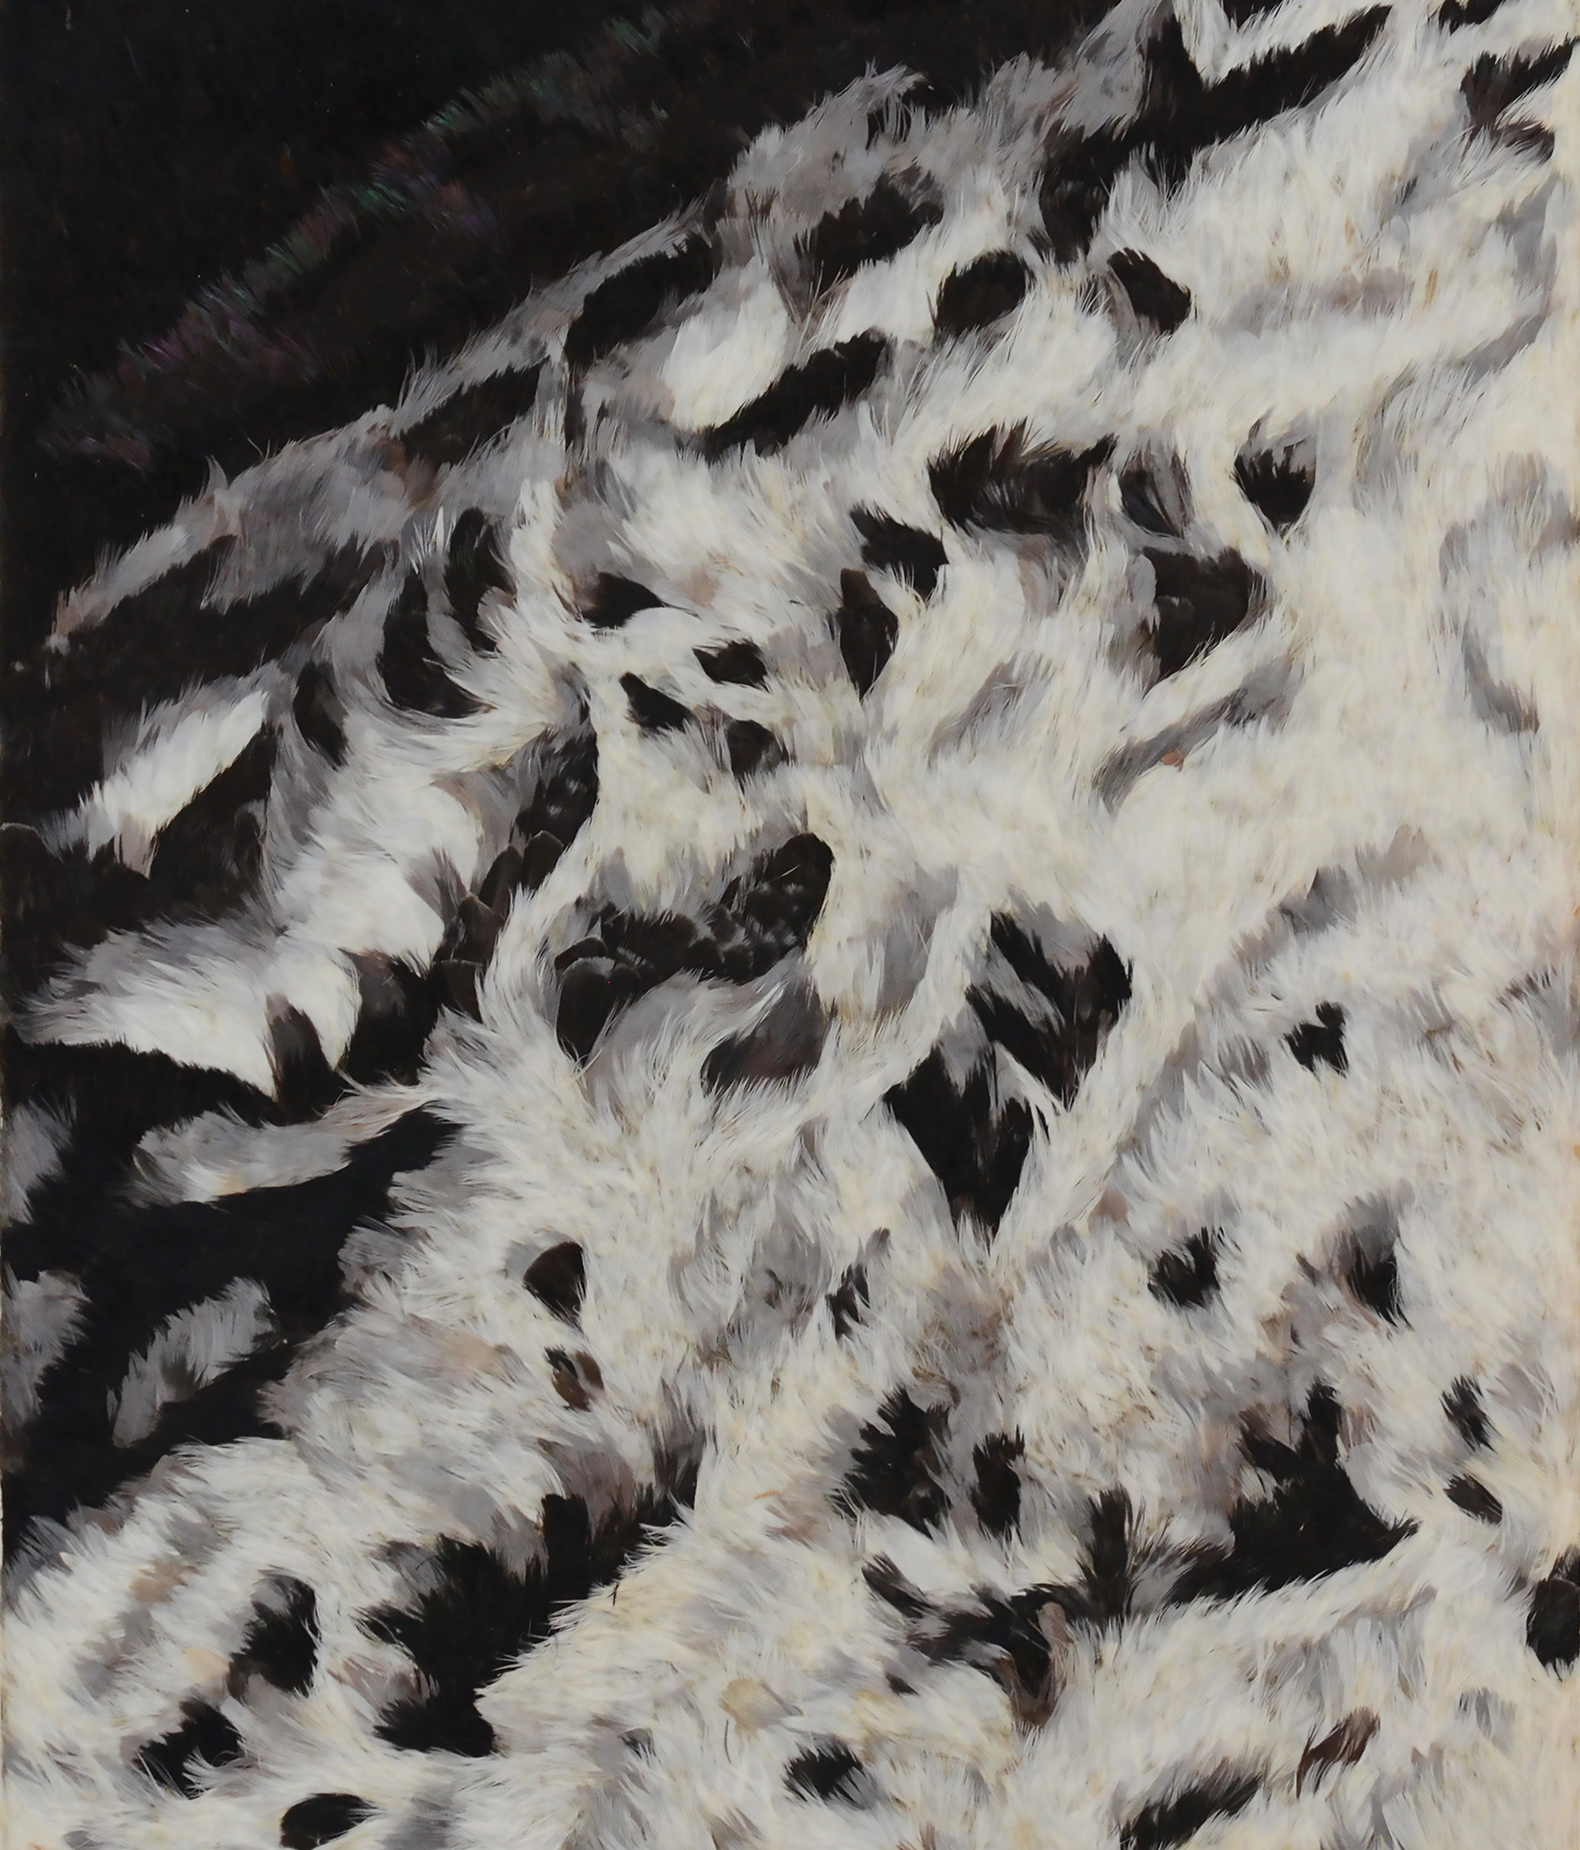 Pablo Vargas Lugo, “SolarMax (Spiculae)”, 2022. Detalle. Pluma de gallo, gallina y paloma, cera, papel, papel japonés, papel de arroz, seda y madera. 146 x 45.5 x 2.5cm